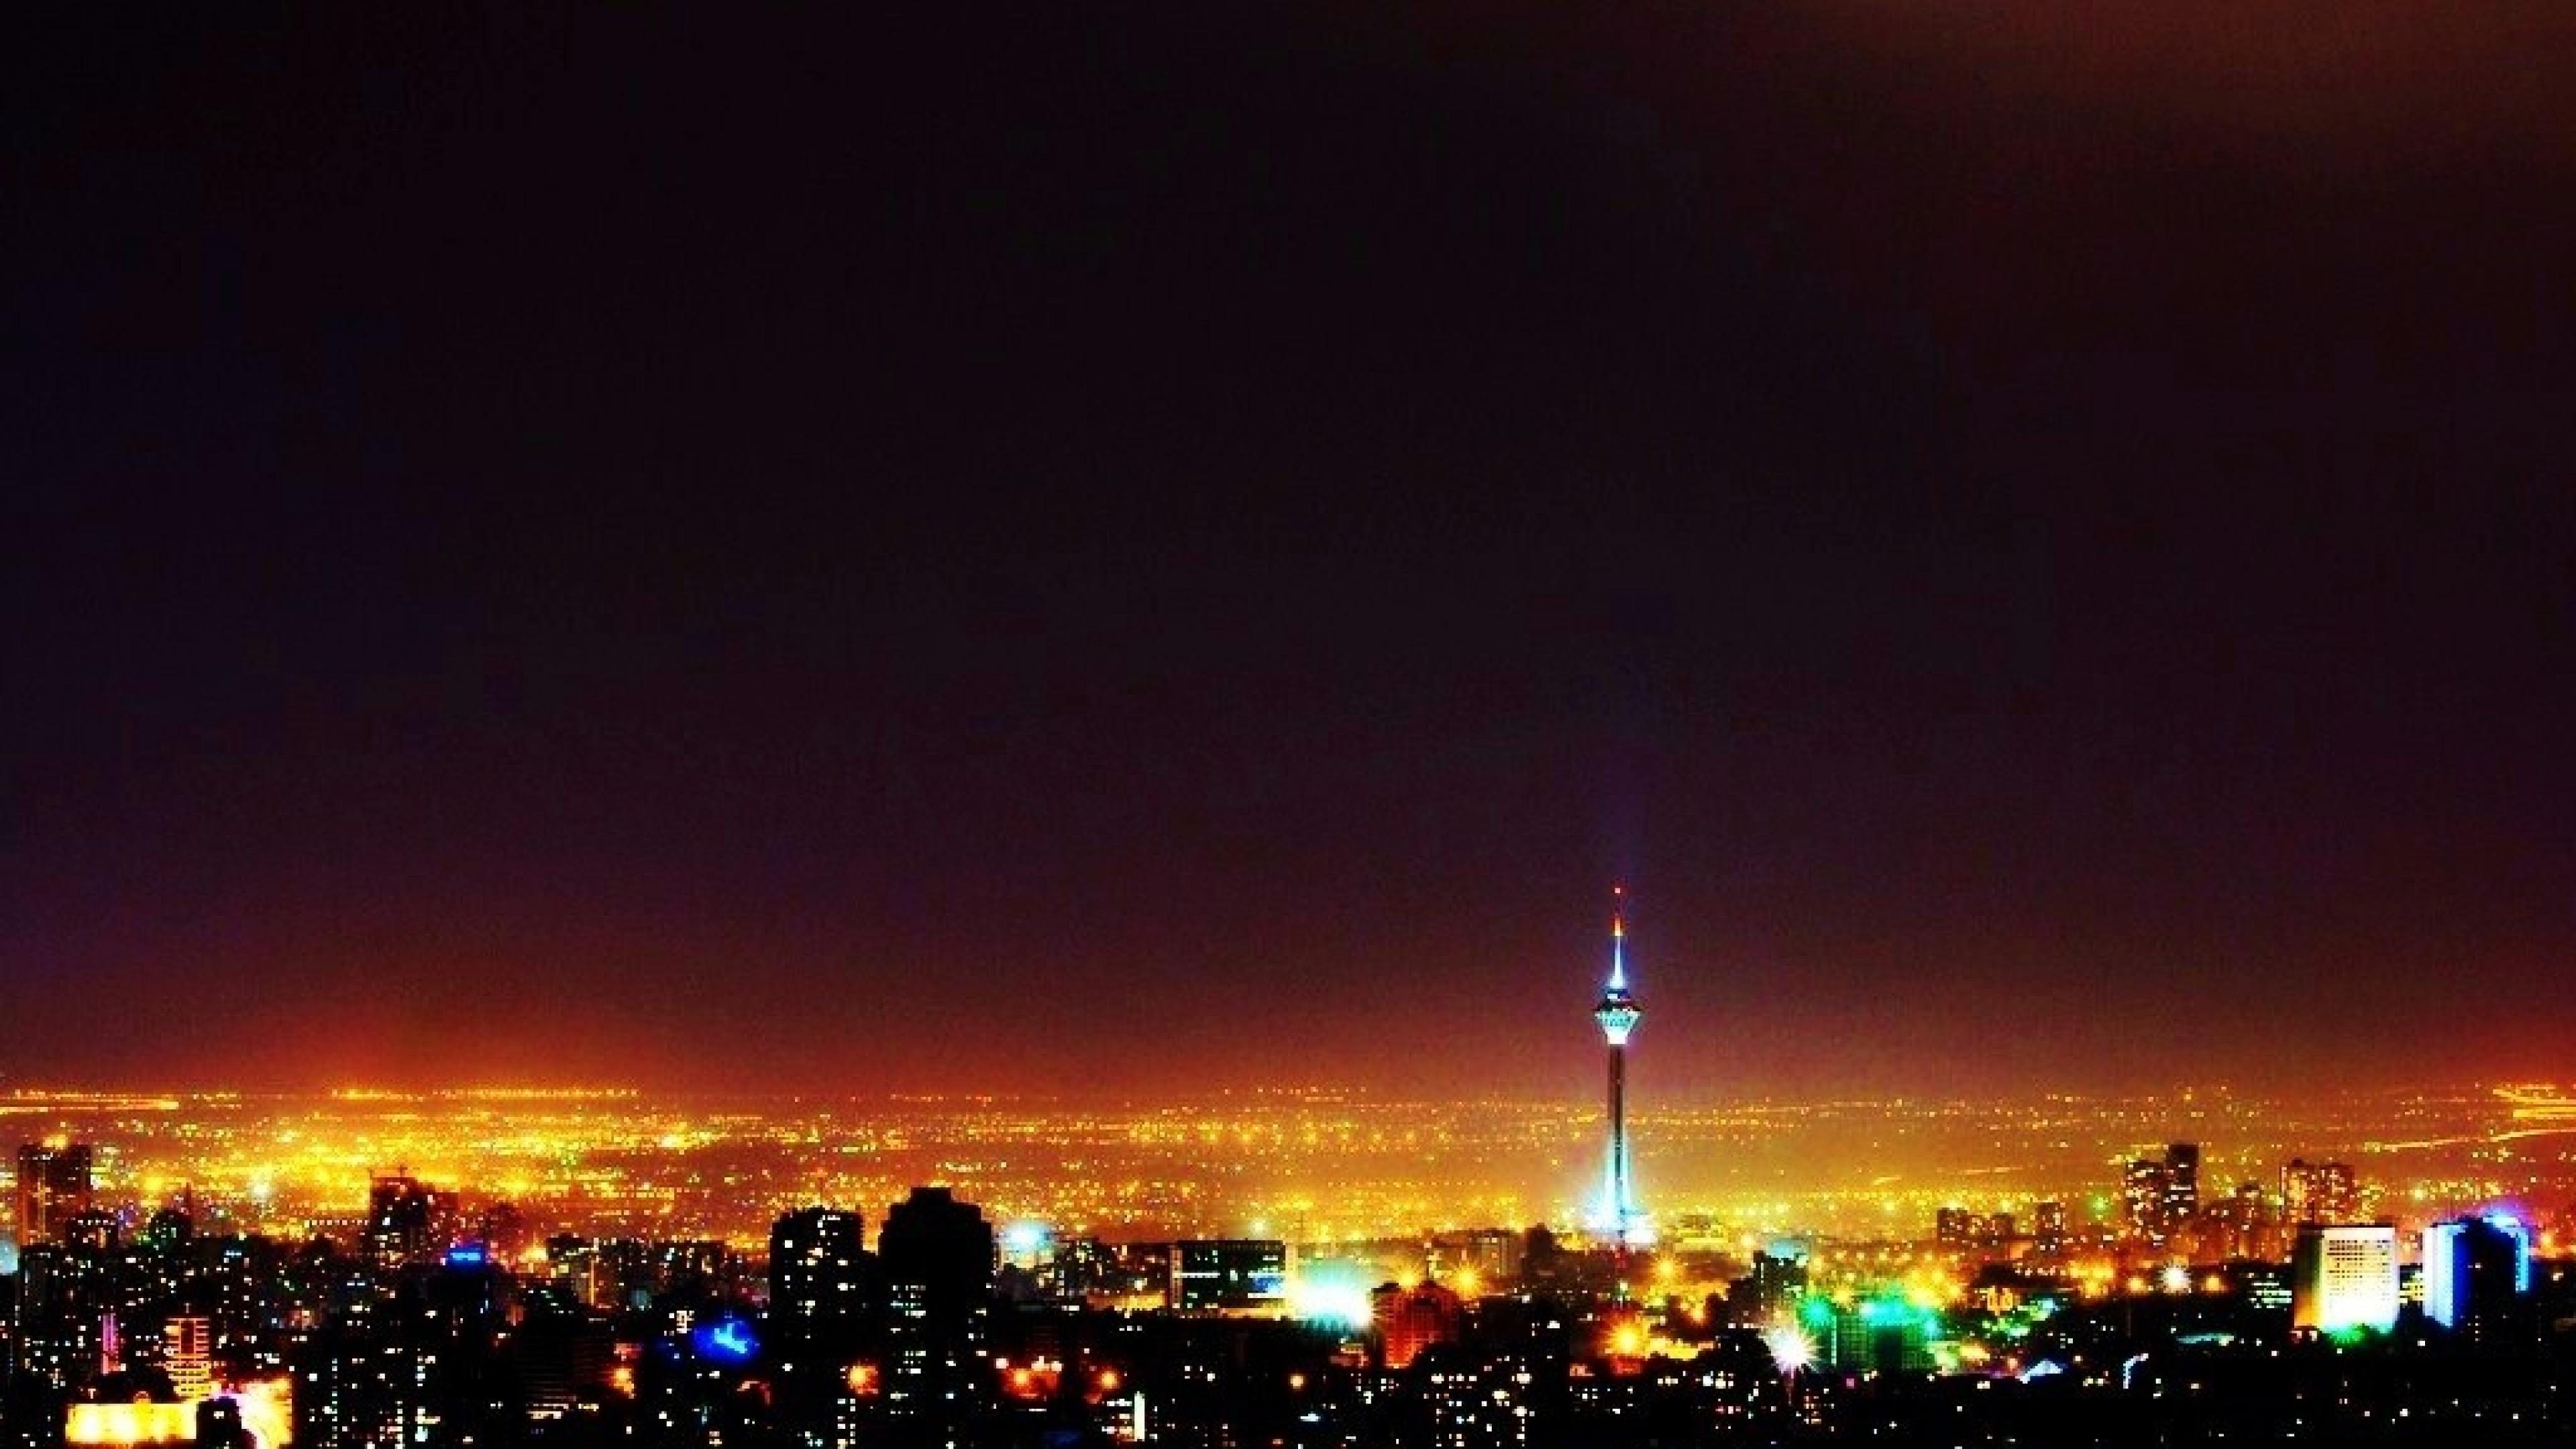 Night Teheran Milad Tower Tehran B0b